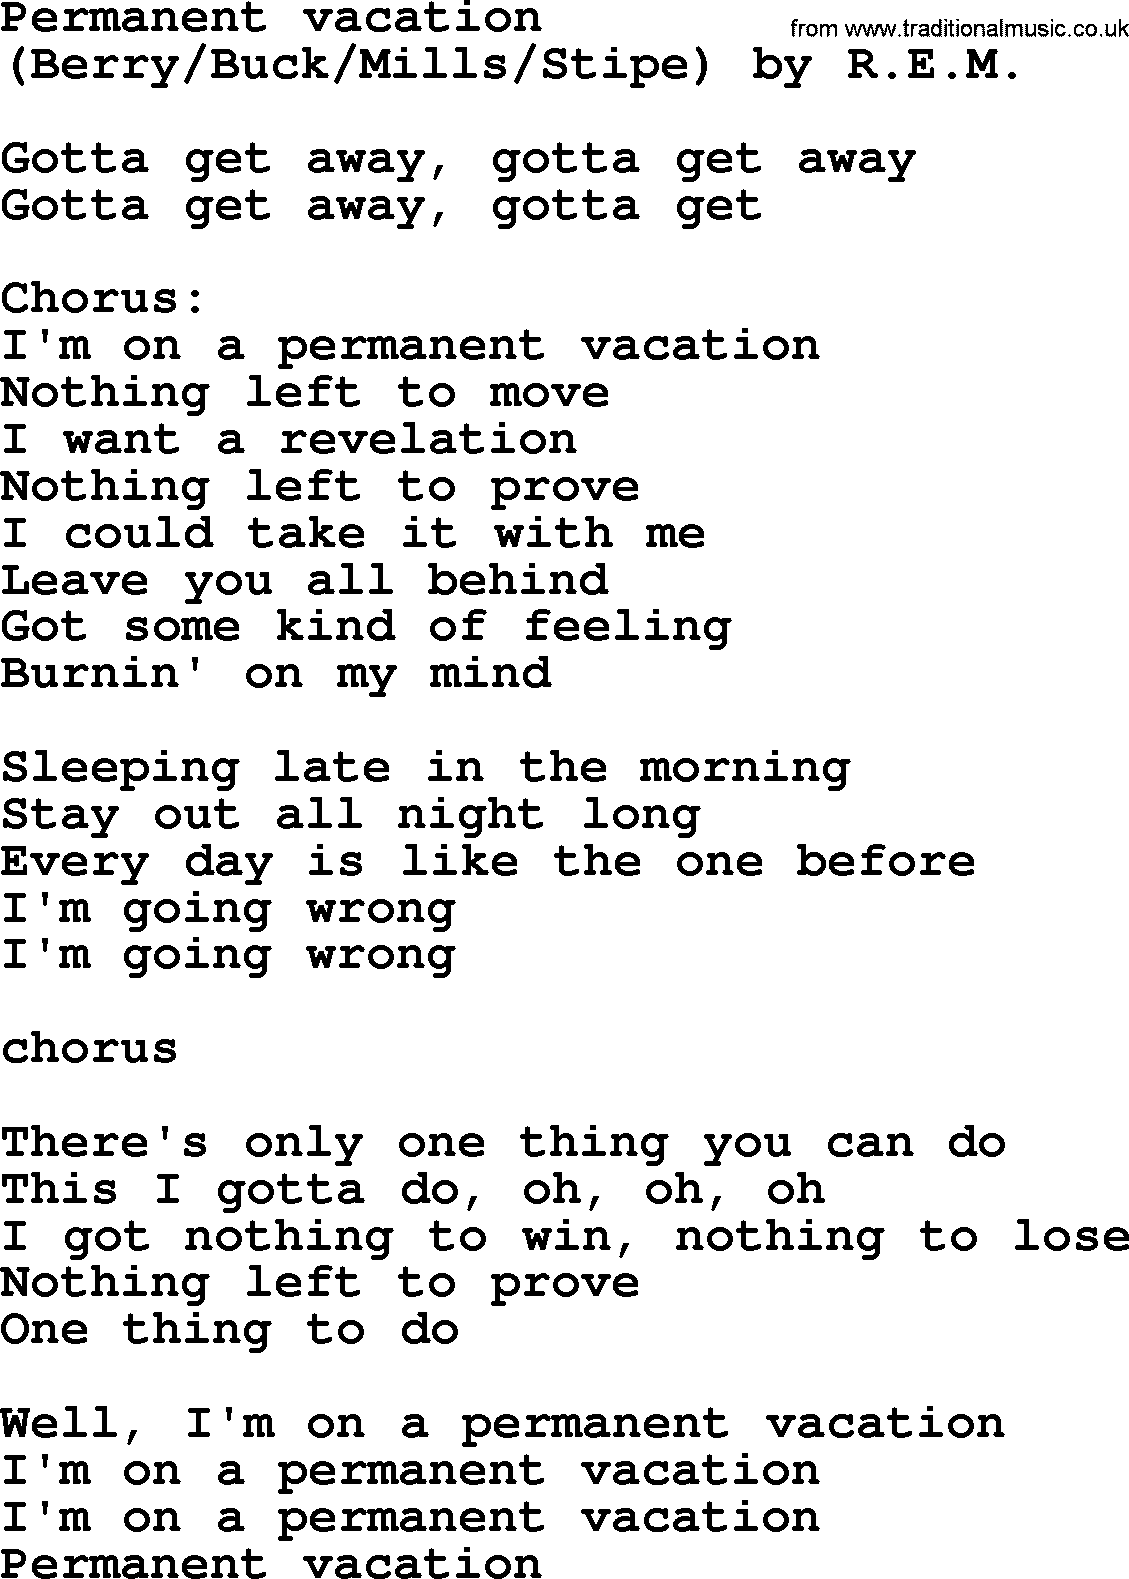 Bruce Springsteen song: Permanent Vacation lyrics